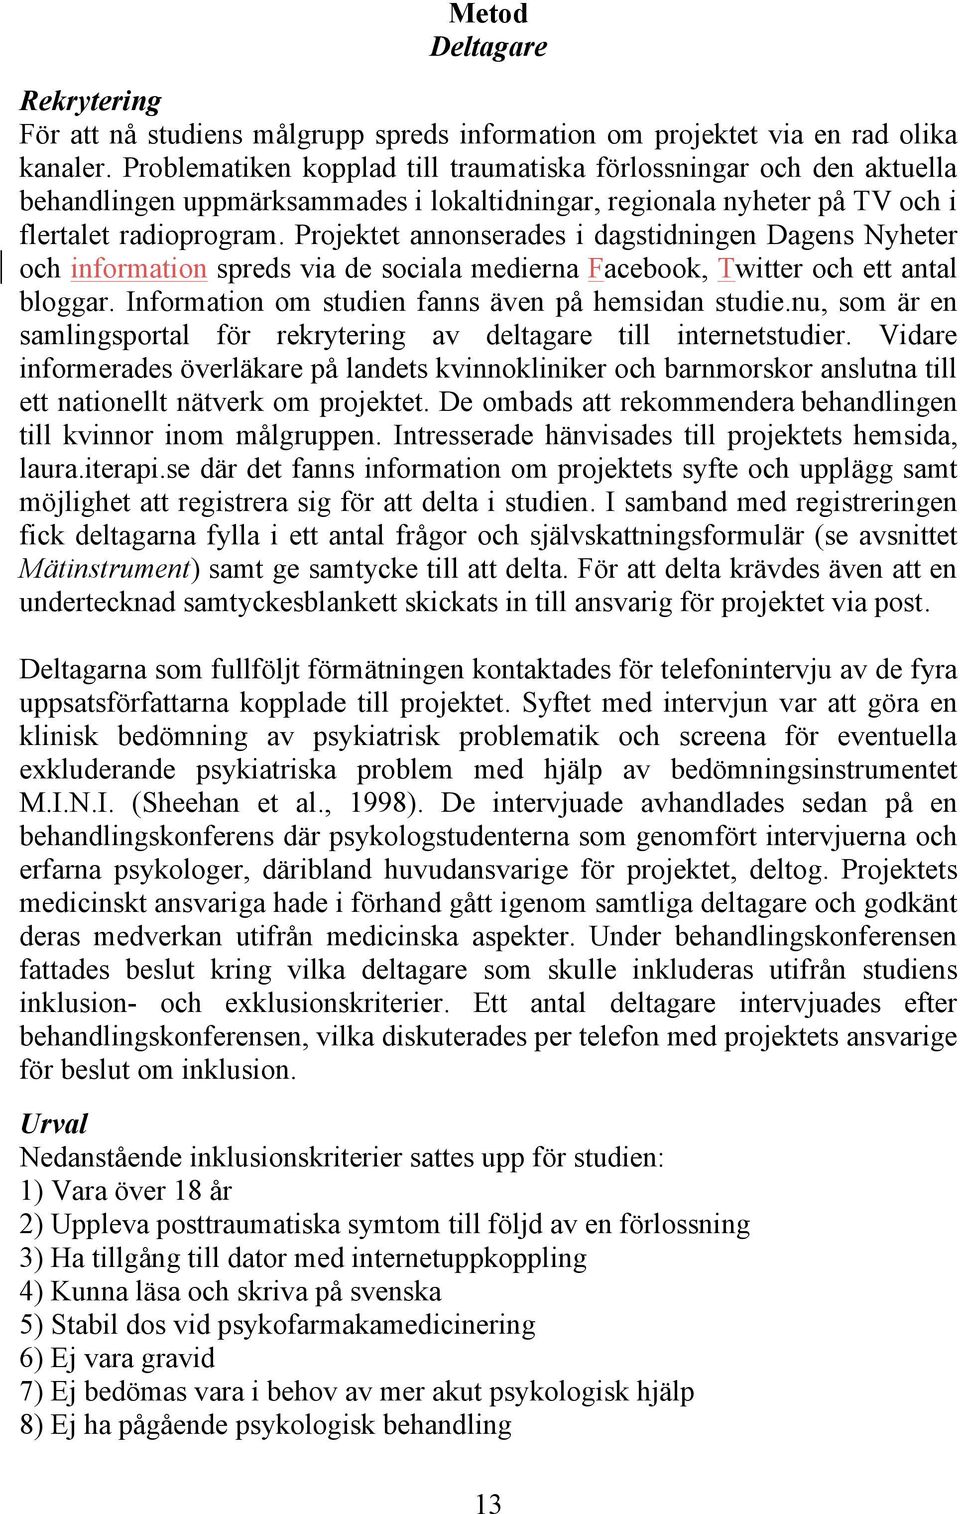 Projektet annonserades i dagstidningen Dagens Nyheter och information spreds via de sociala medierna Facebook, Twitter och ett antal bloggar. Information om studien fanns även på hemsidan studie.